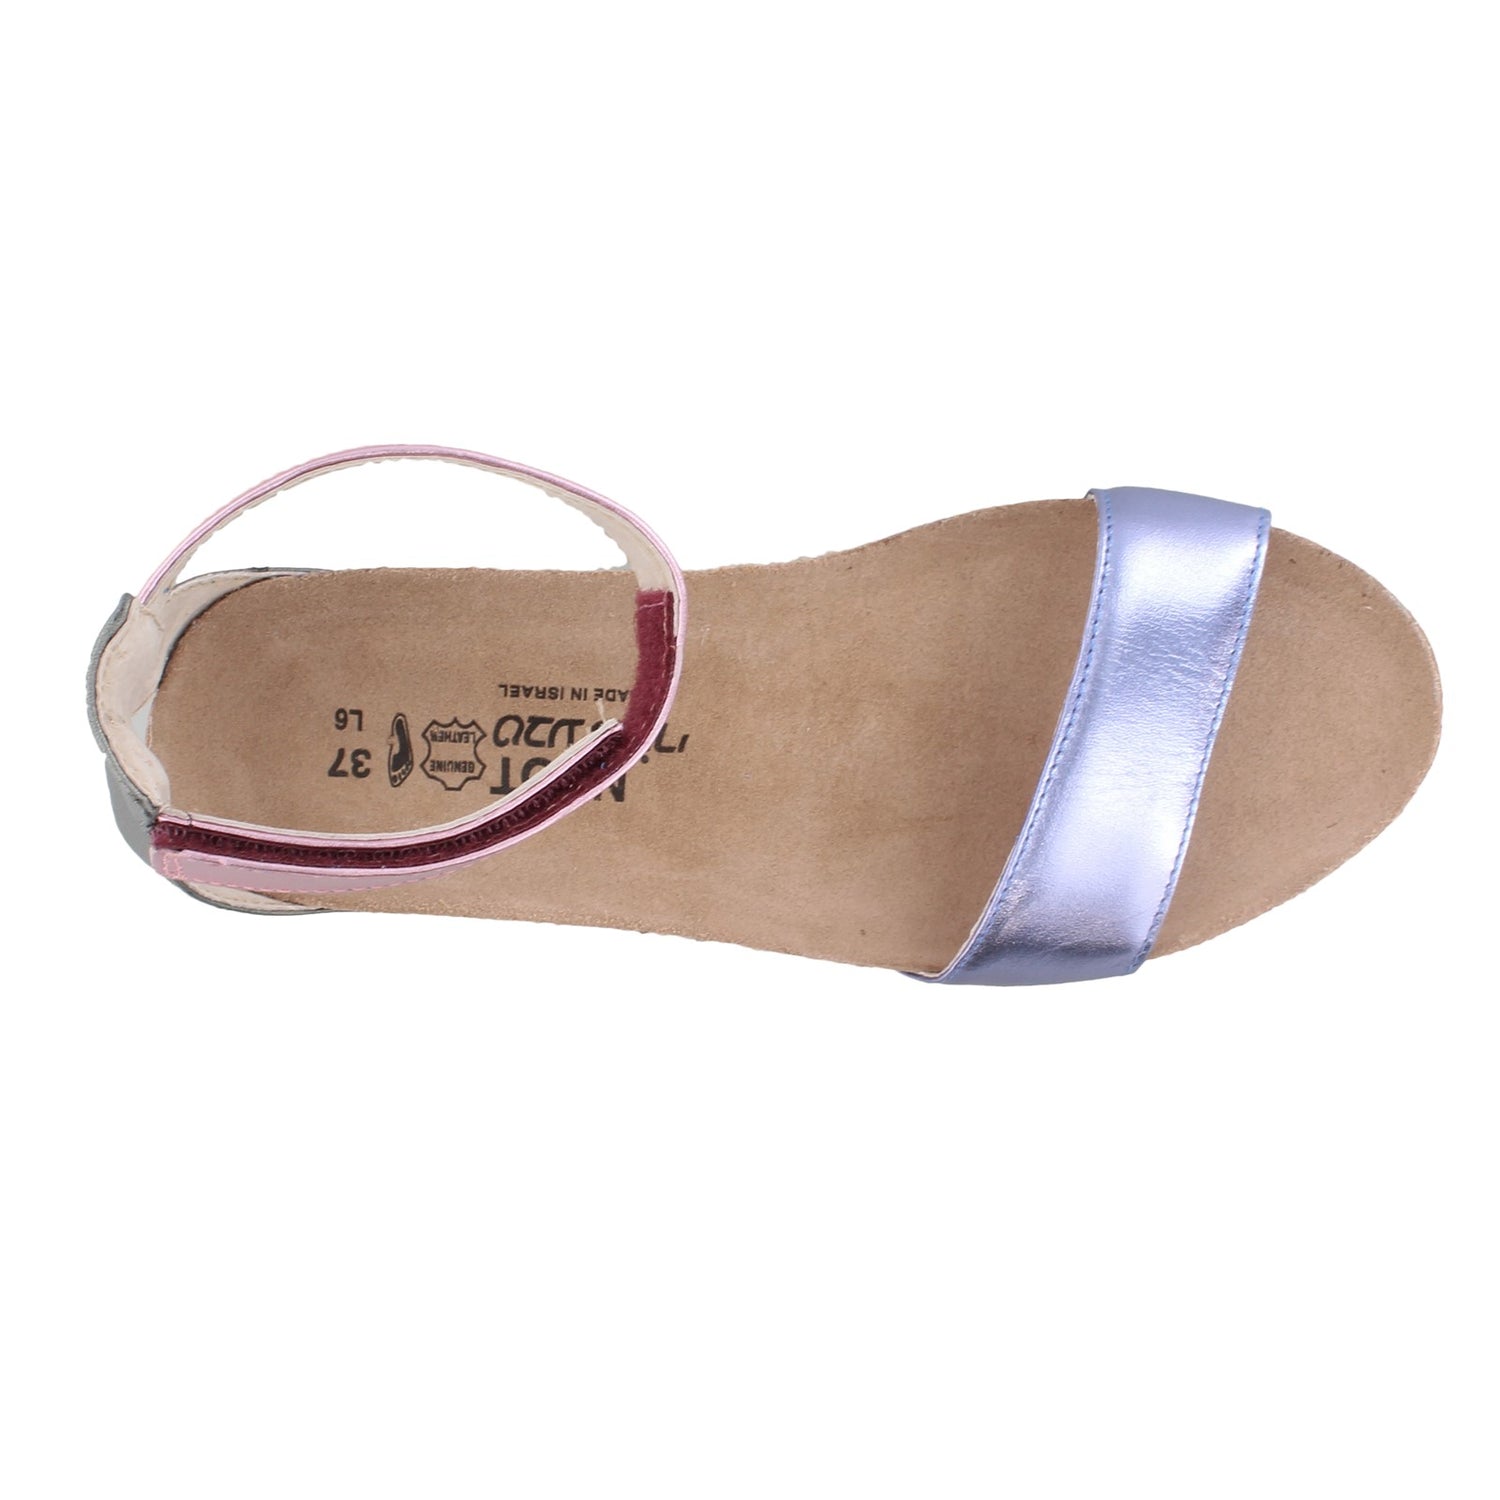 Peltz Shoes  Women's Naot Pixie Sandal PURPLE 5016-PDU